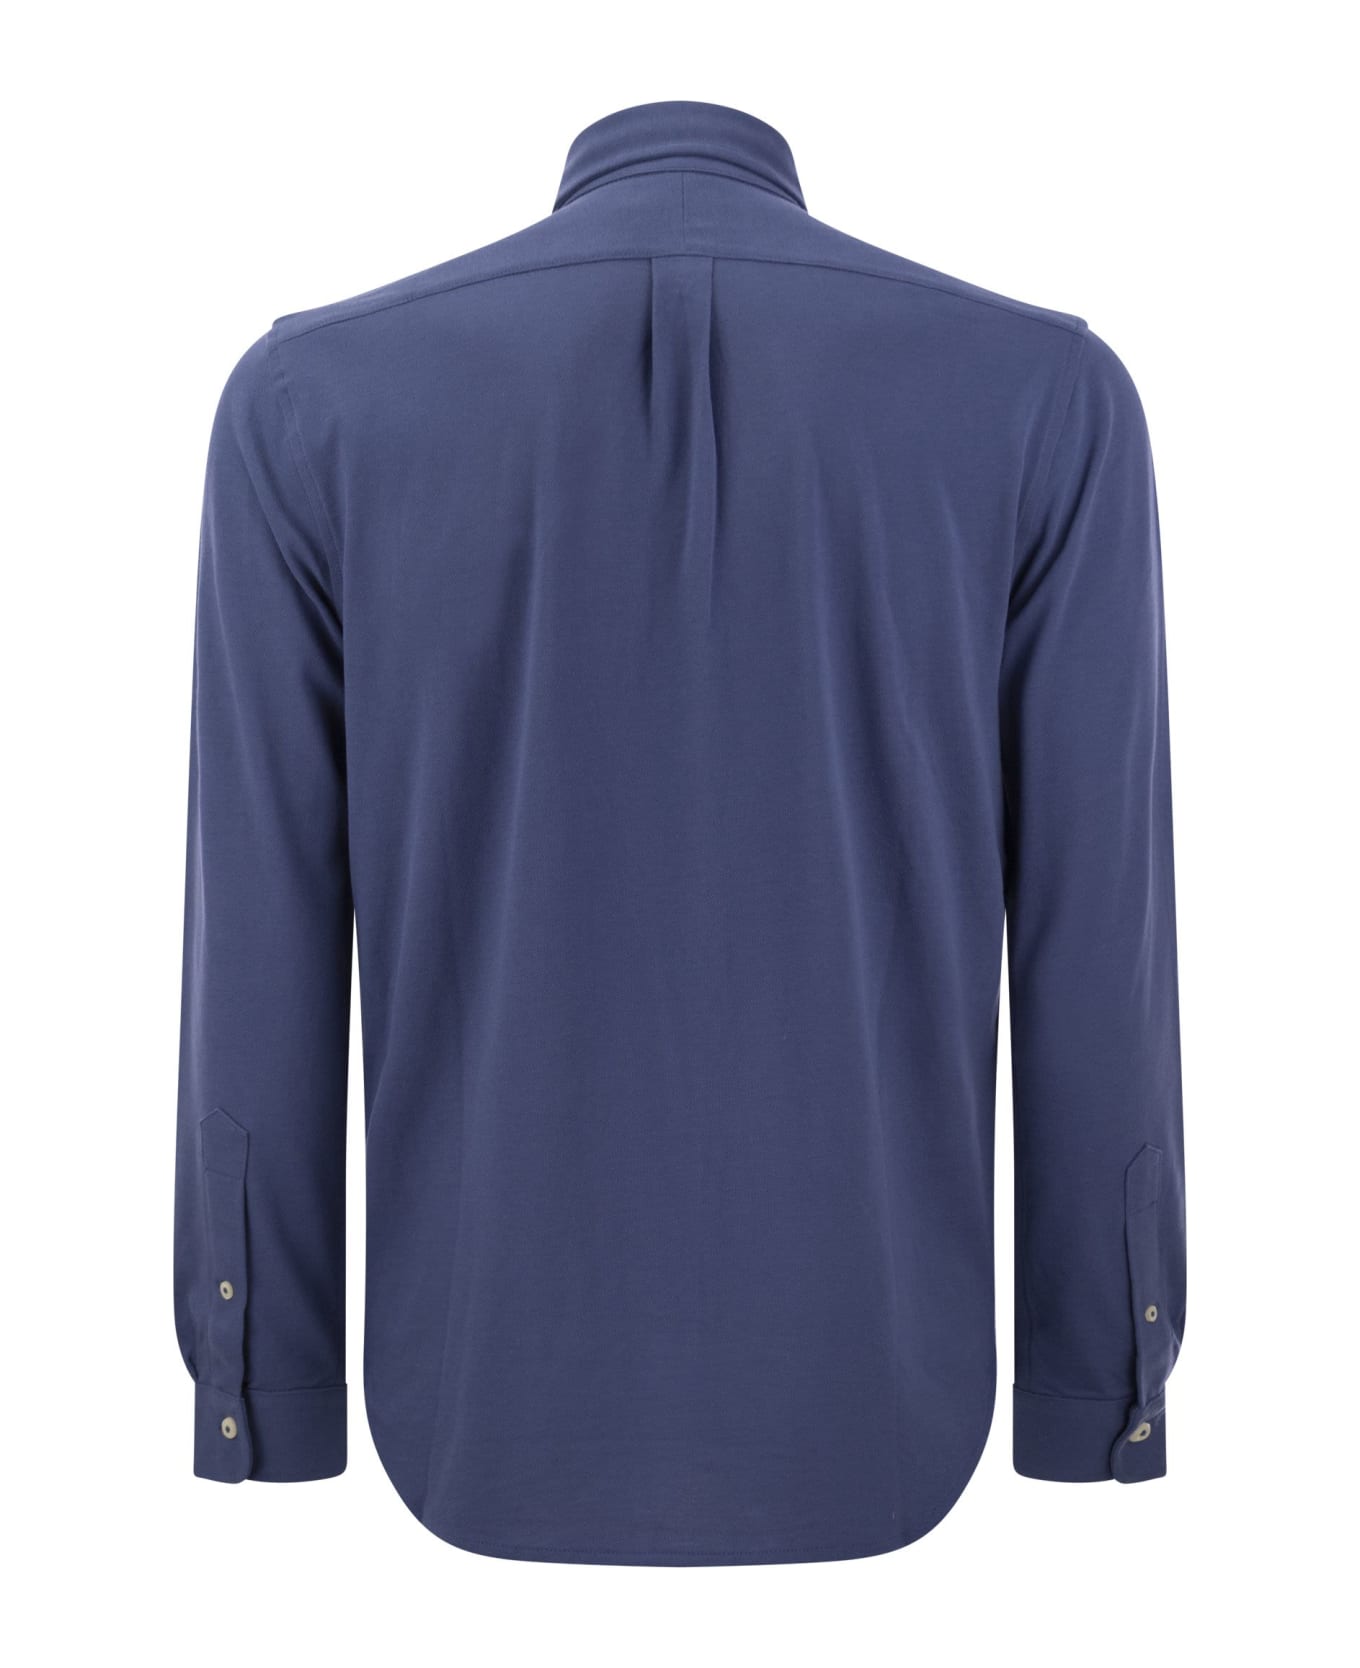 Polo Ralph Lauren Long Sleeve Sport Shirt Shirt - Avio シャツ